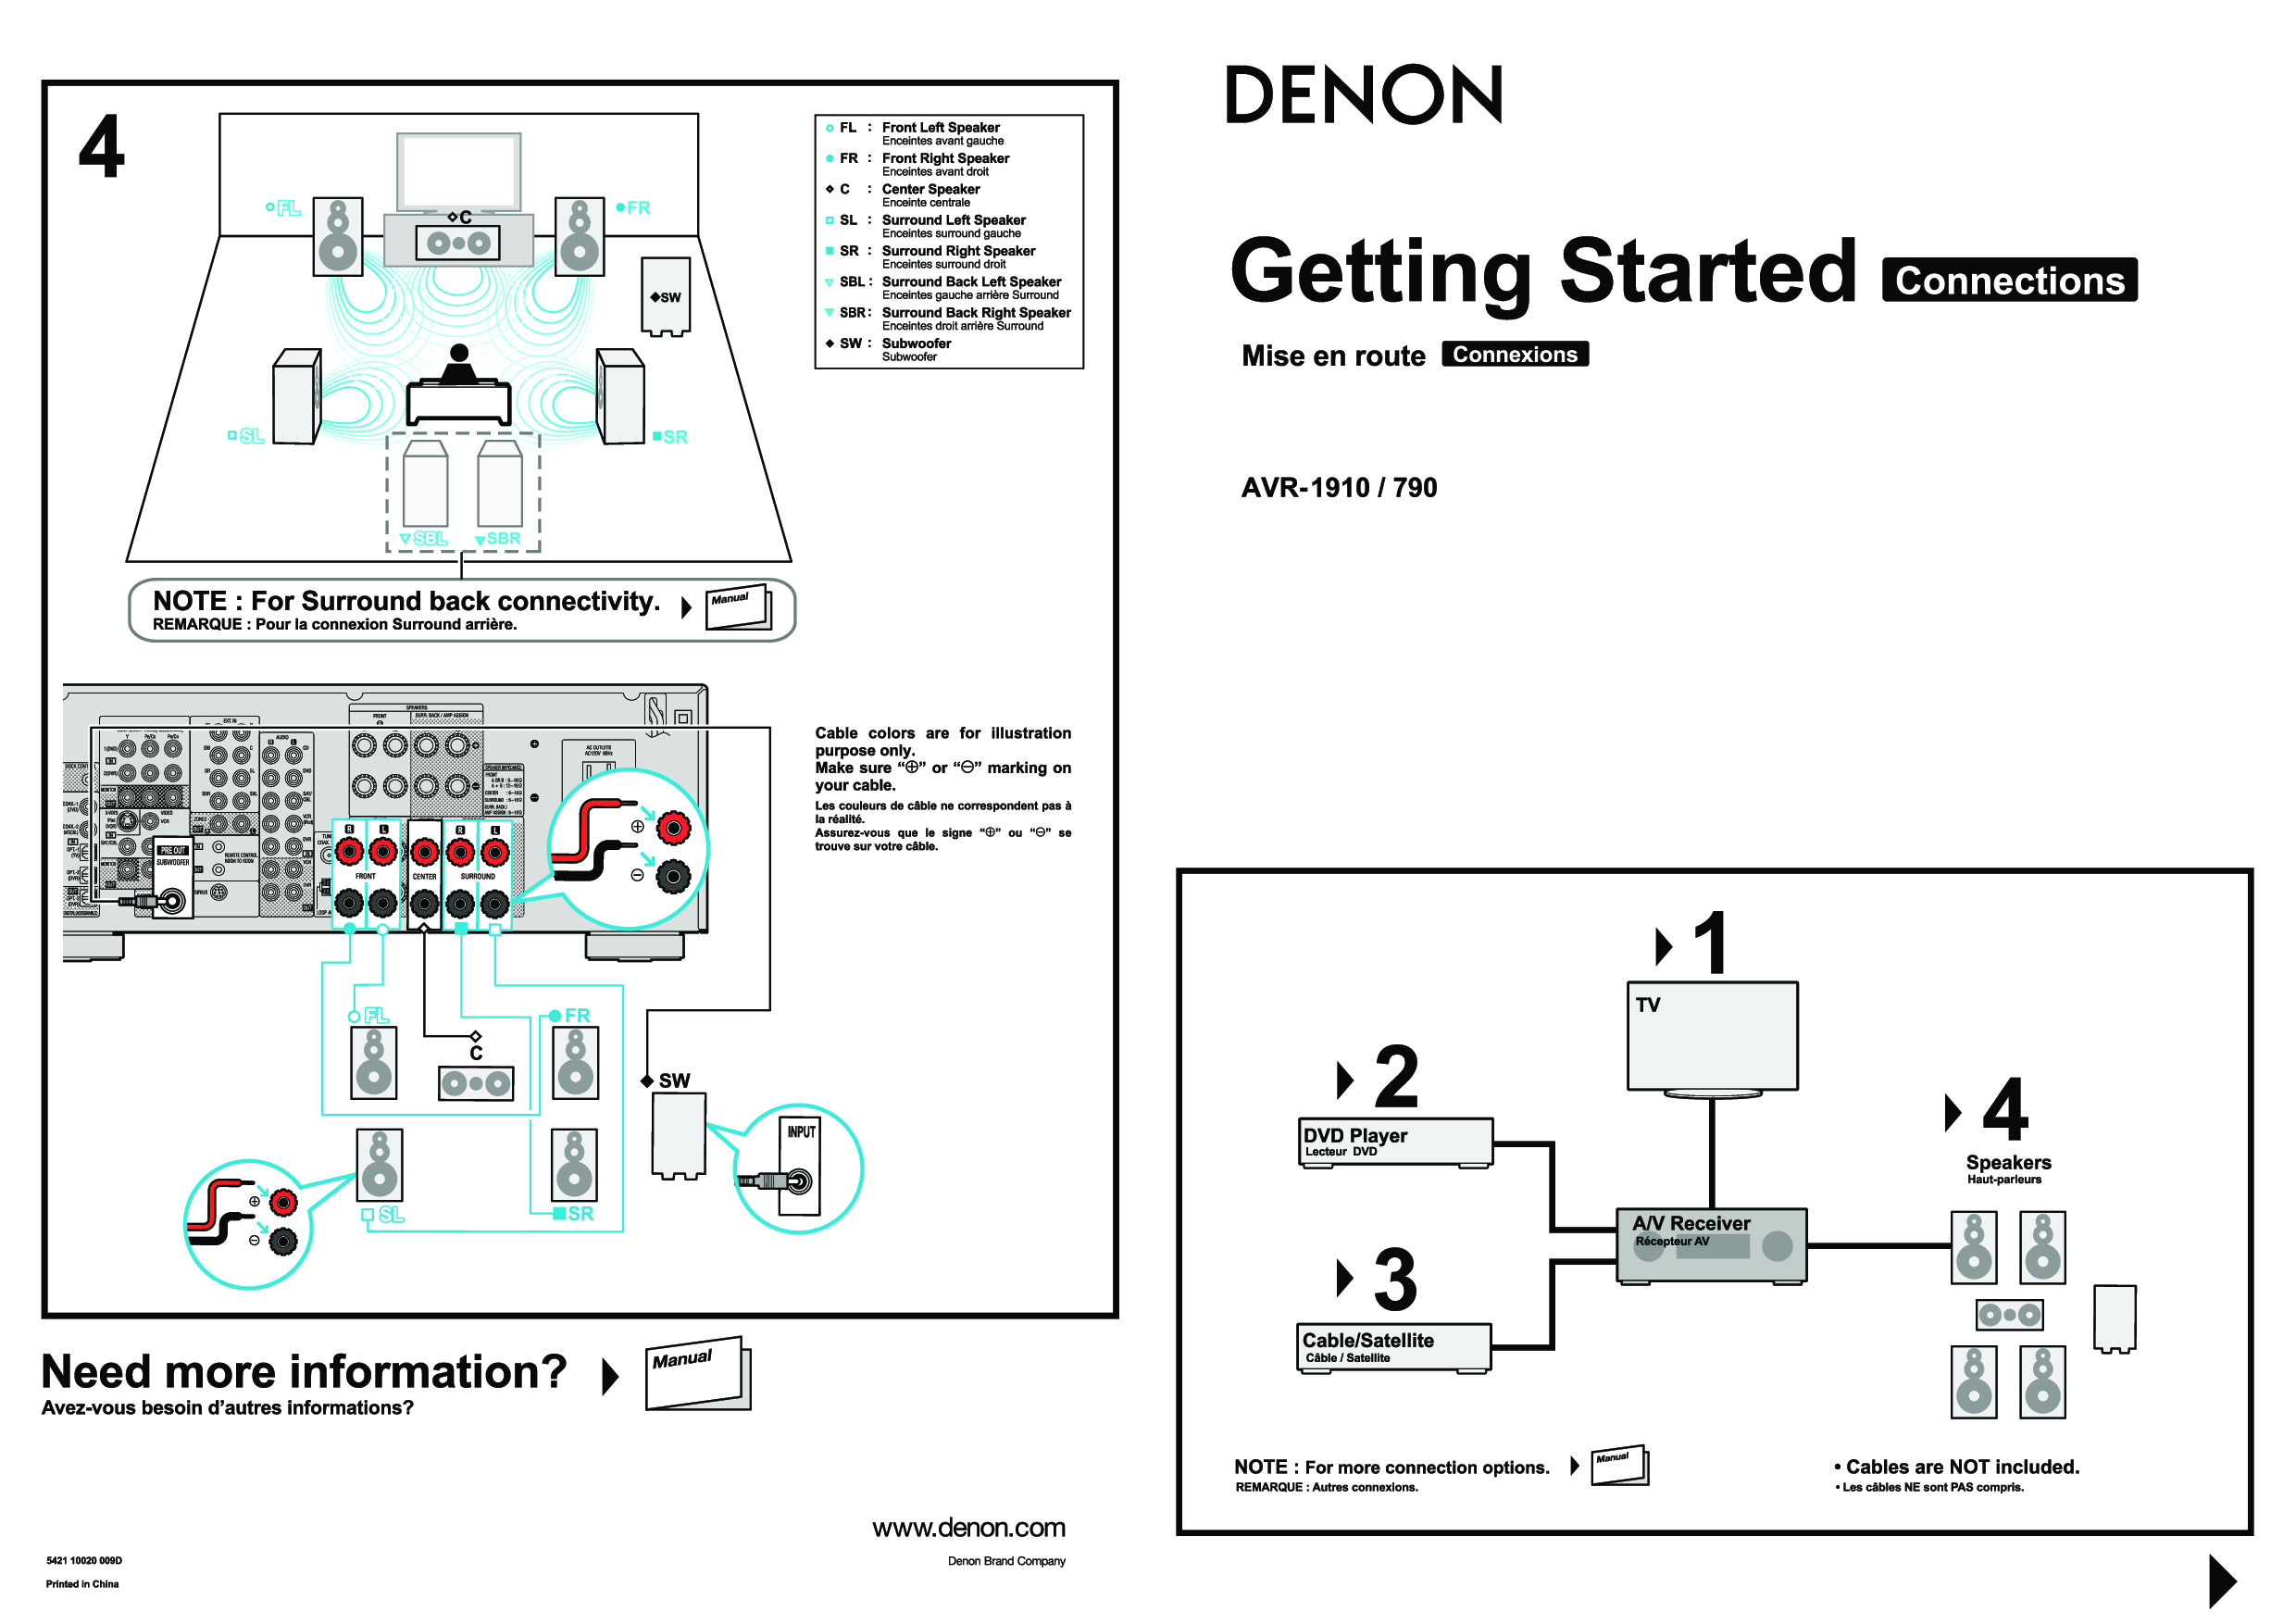 Denon AVR-1910, AVR-790 Setup Guide